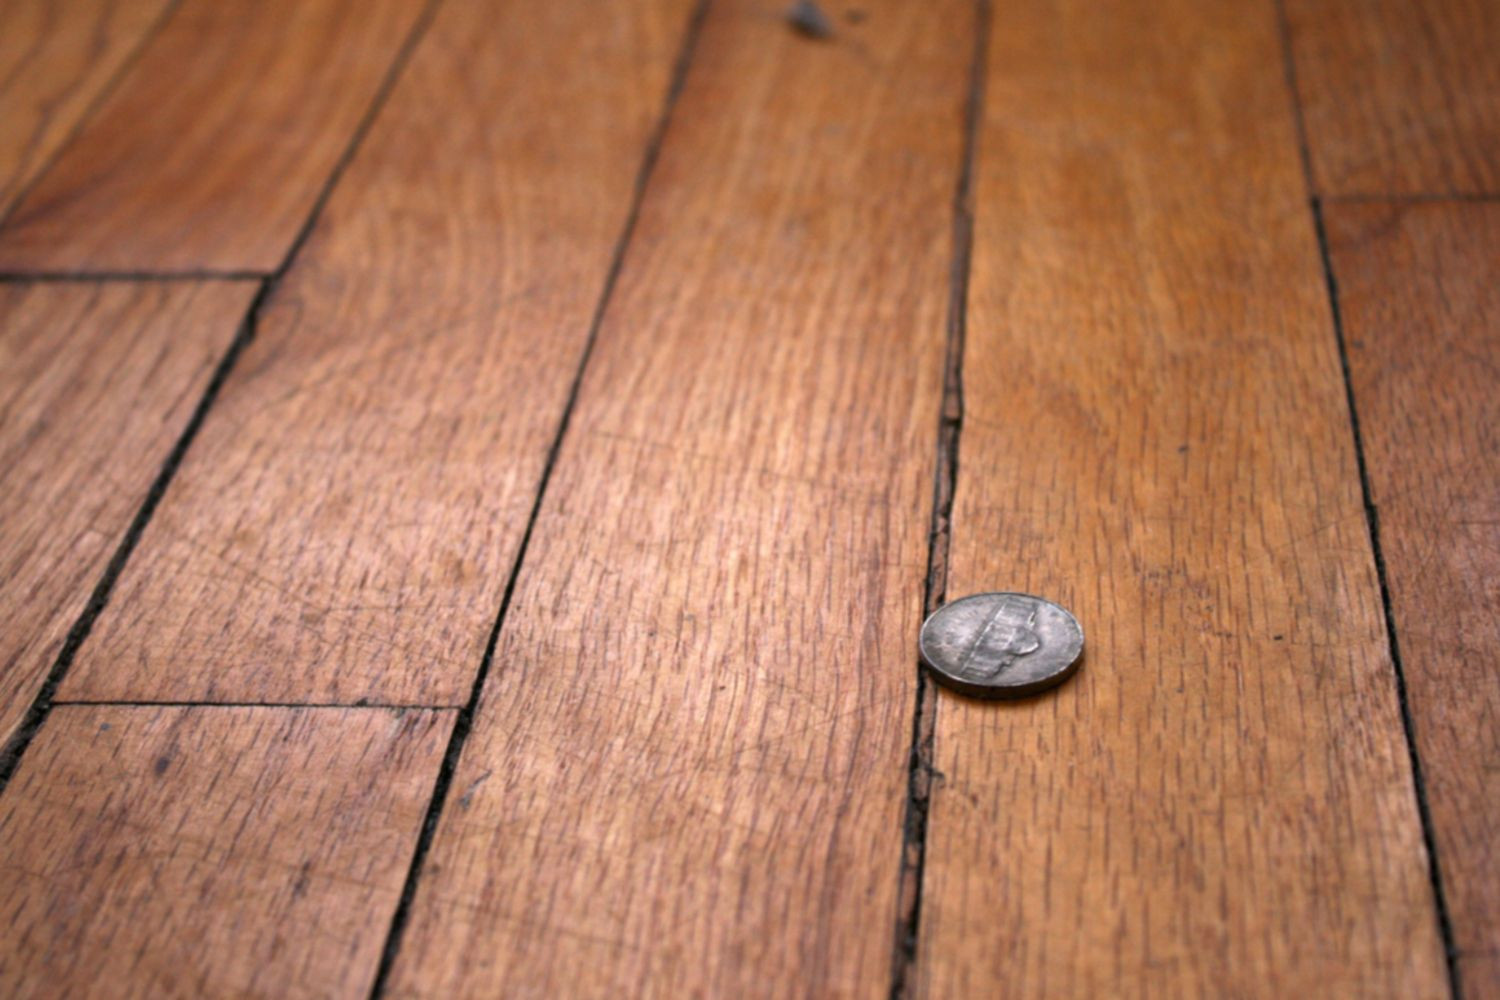 12 Unique Hardwood Parquet Flooring Uk 2024 free download hardwood parquet flooring uk of how to repair gaps between floorboards regarding wood floor with gaps between boards 1500 x 1000 56a49eb25f9b58b7d0d7df8d